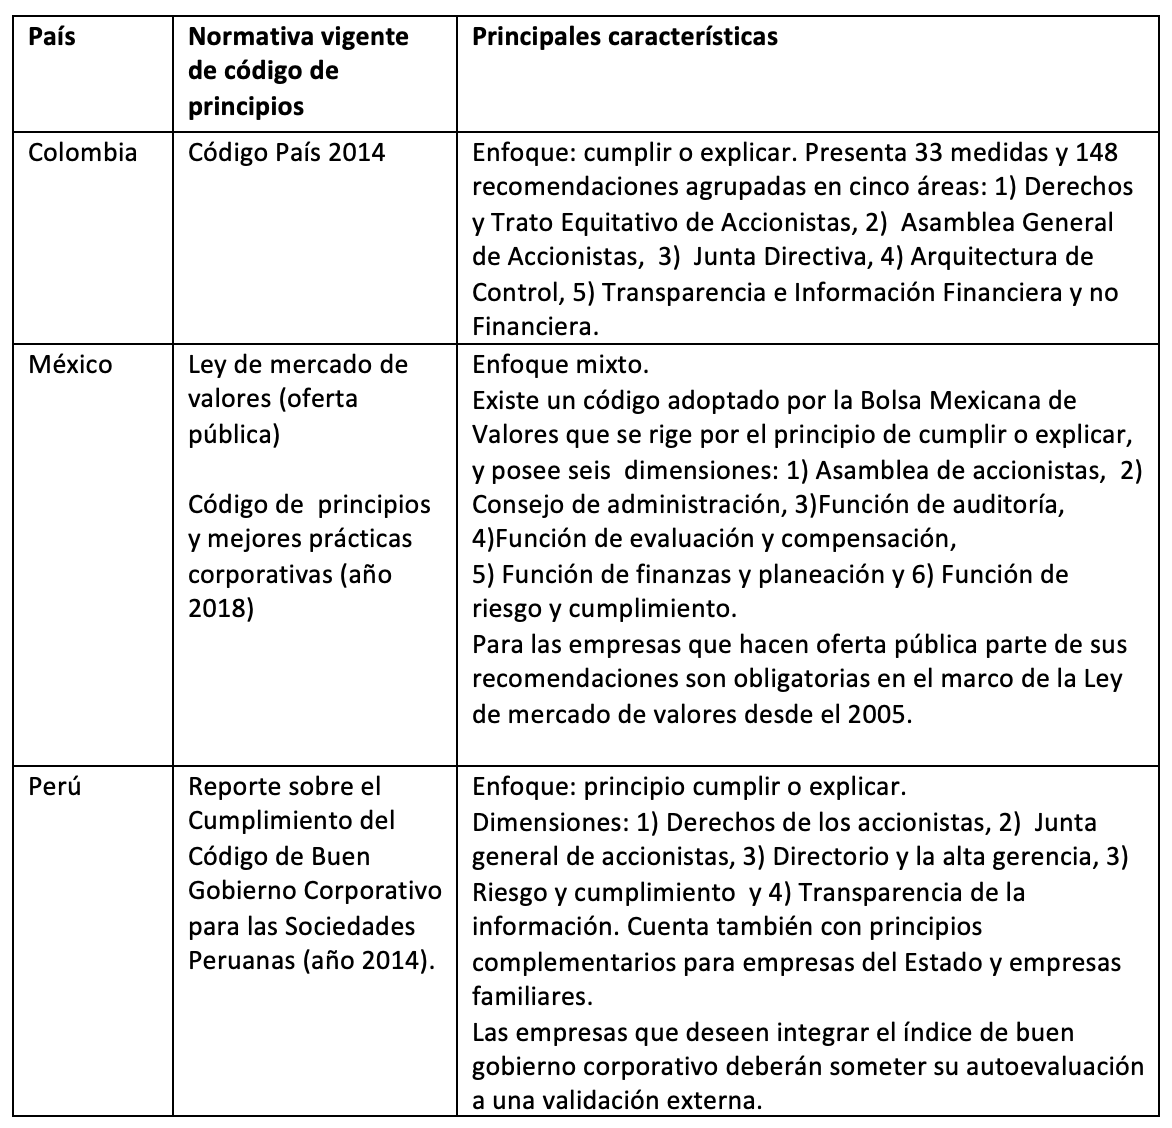 Códigos de gobierno corporativo en algunos países de Latinoamérica